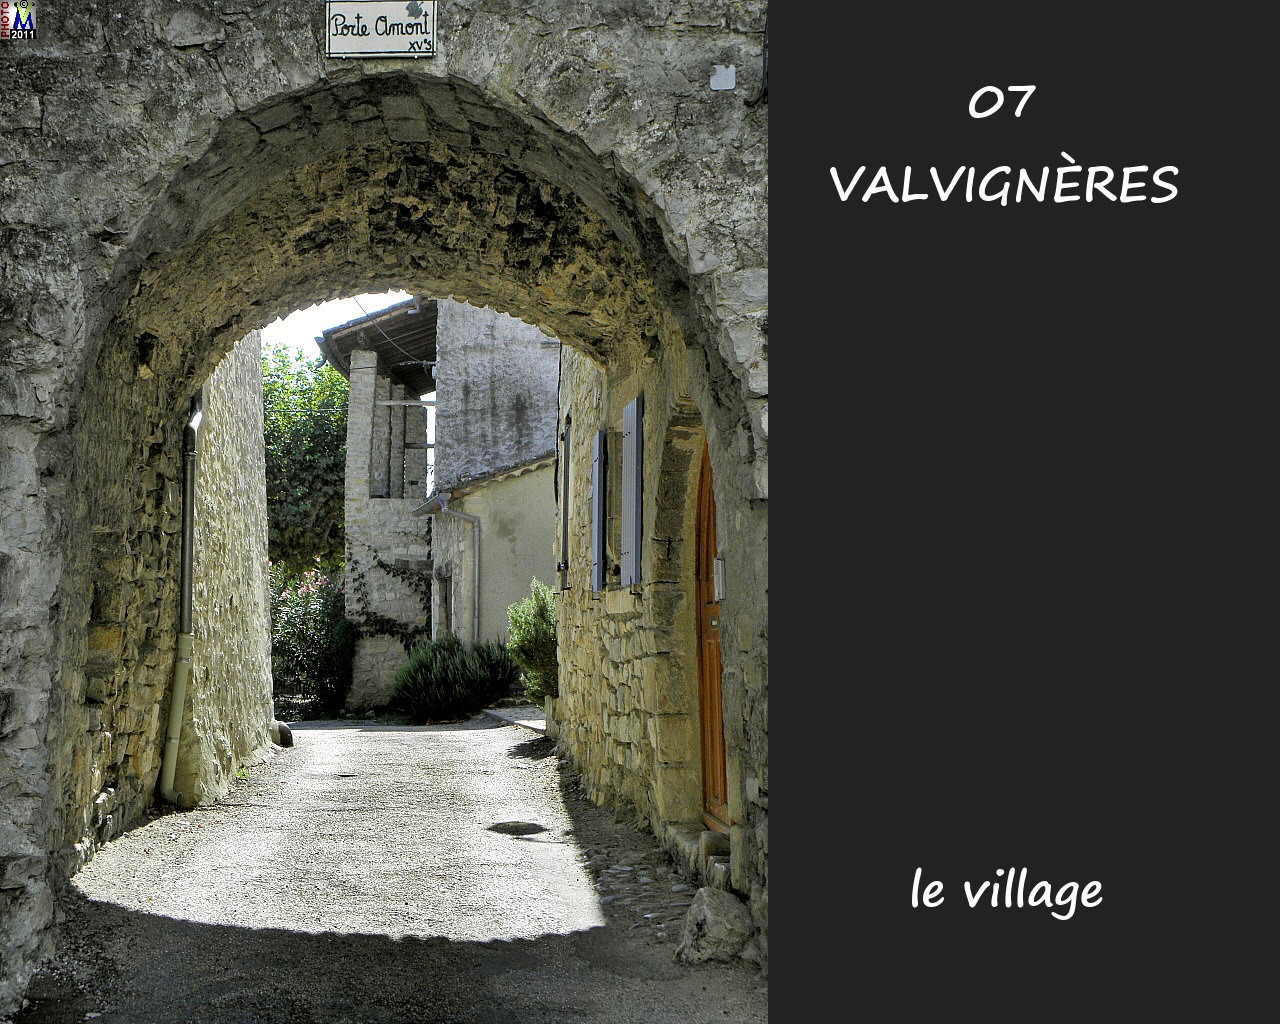 07VALVIGNERES_village_114.jpg